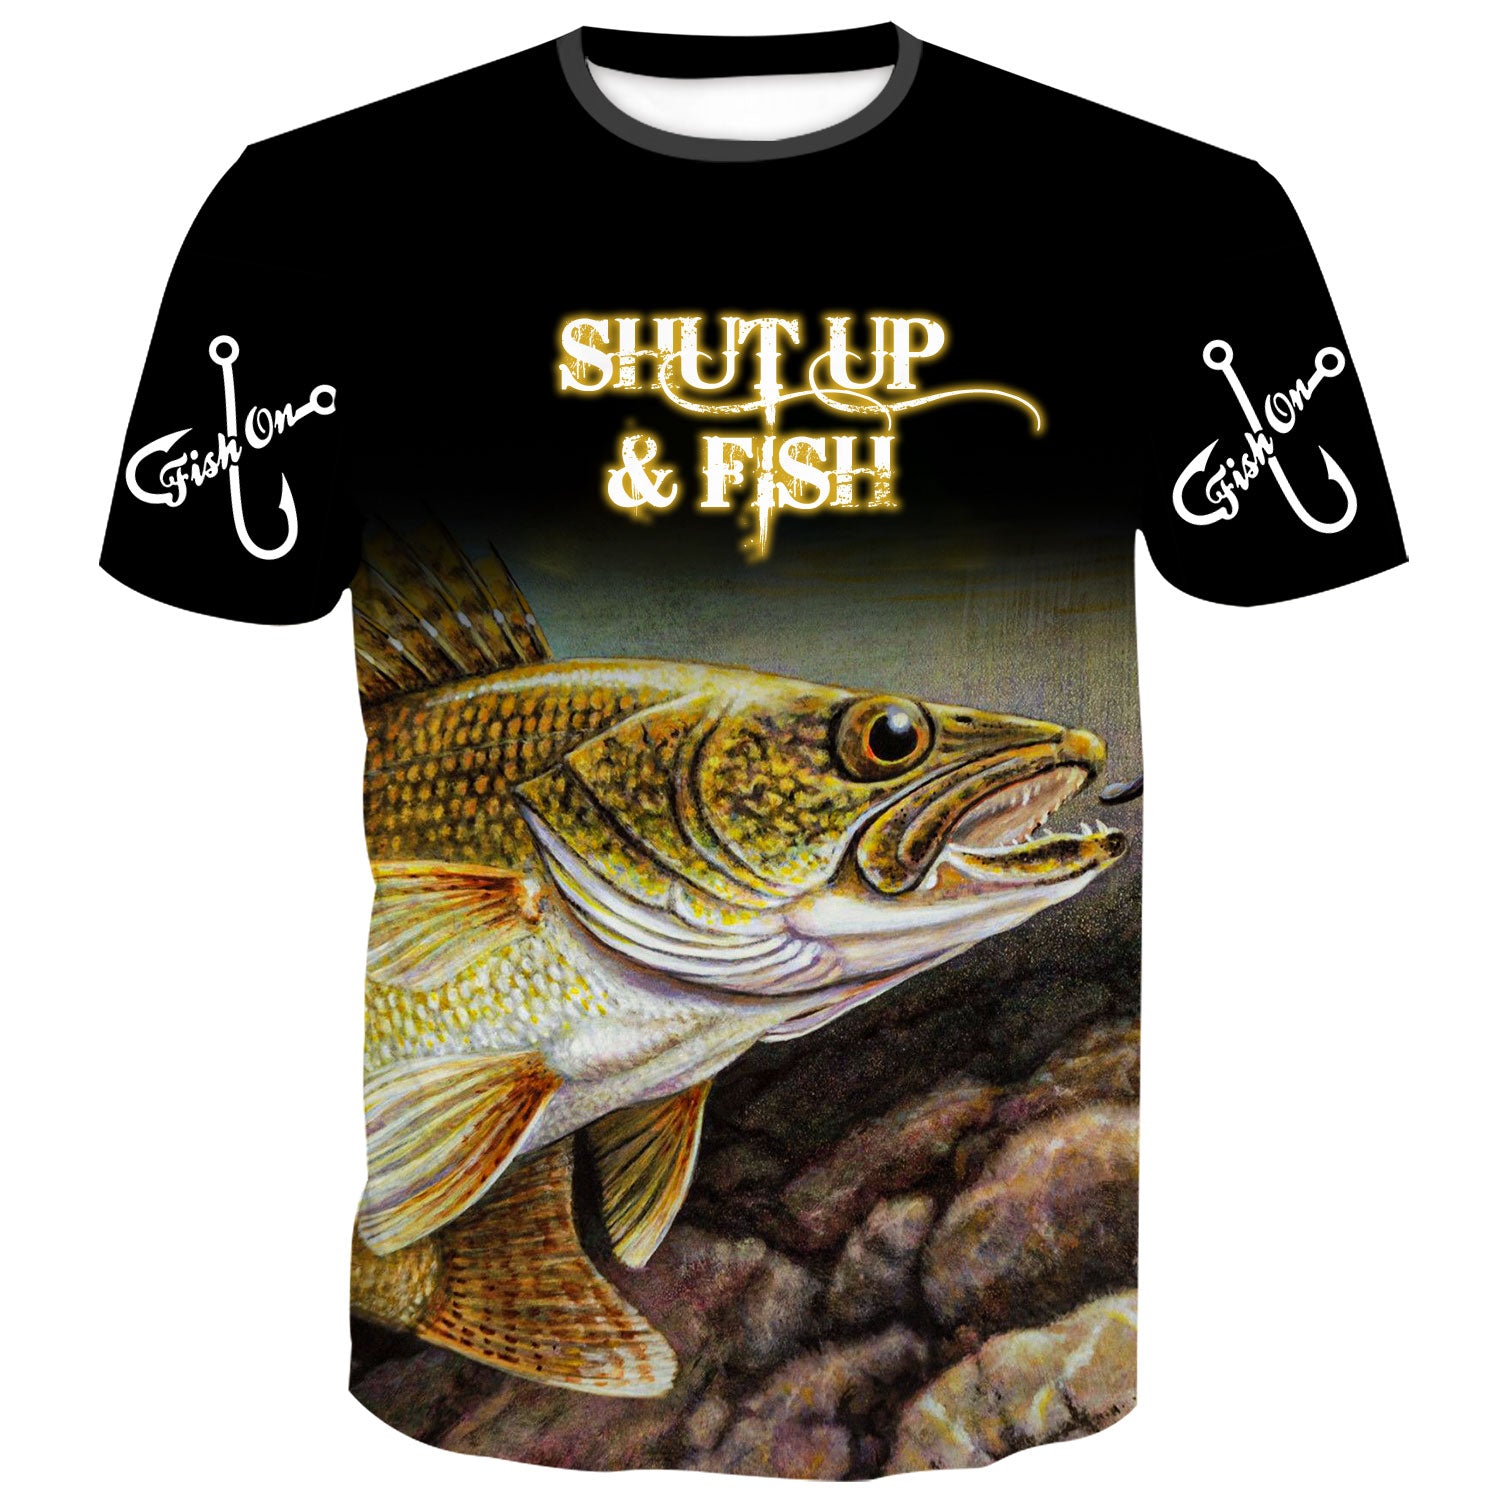 I am going Fishing T-Shirt for Men - Adventure-themed Tee -  elitefishingoutlet